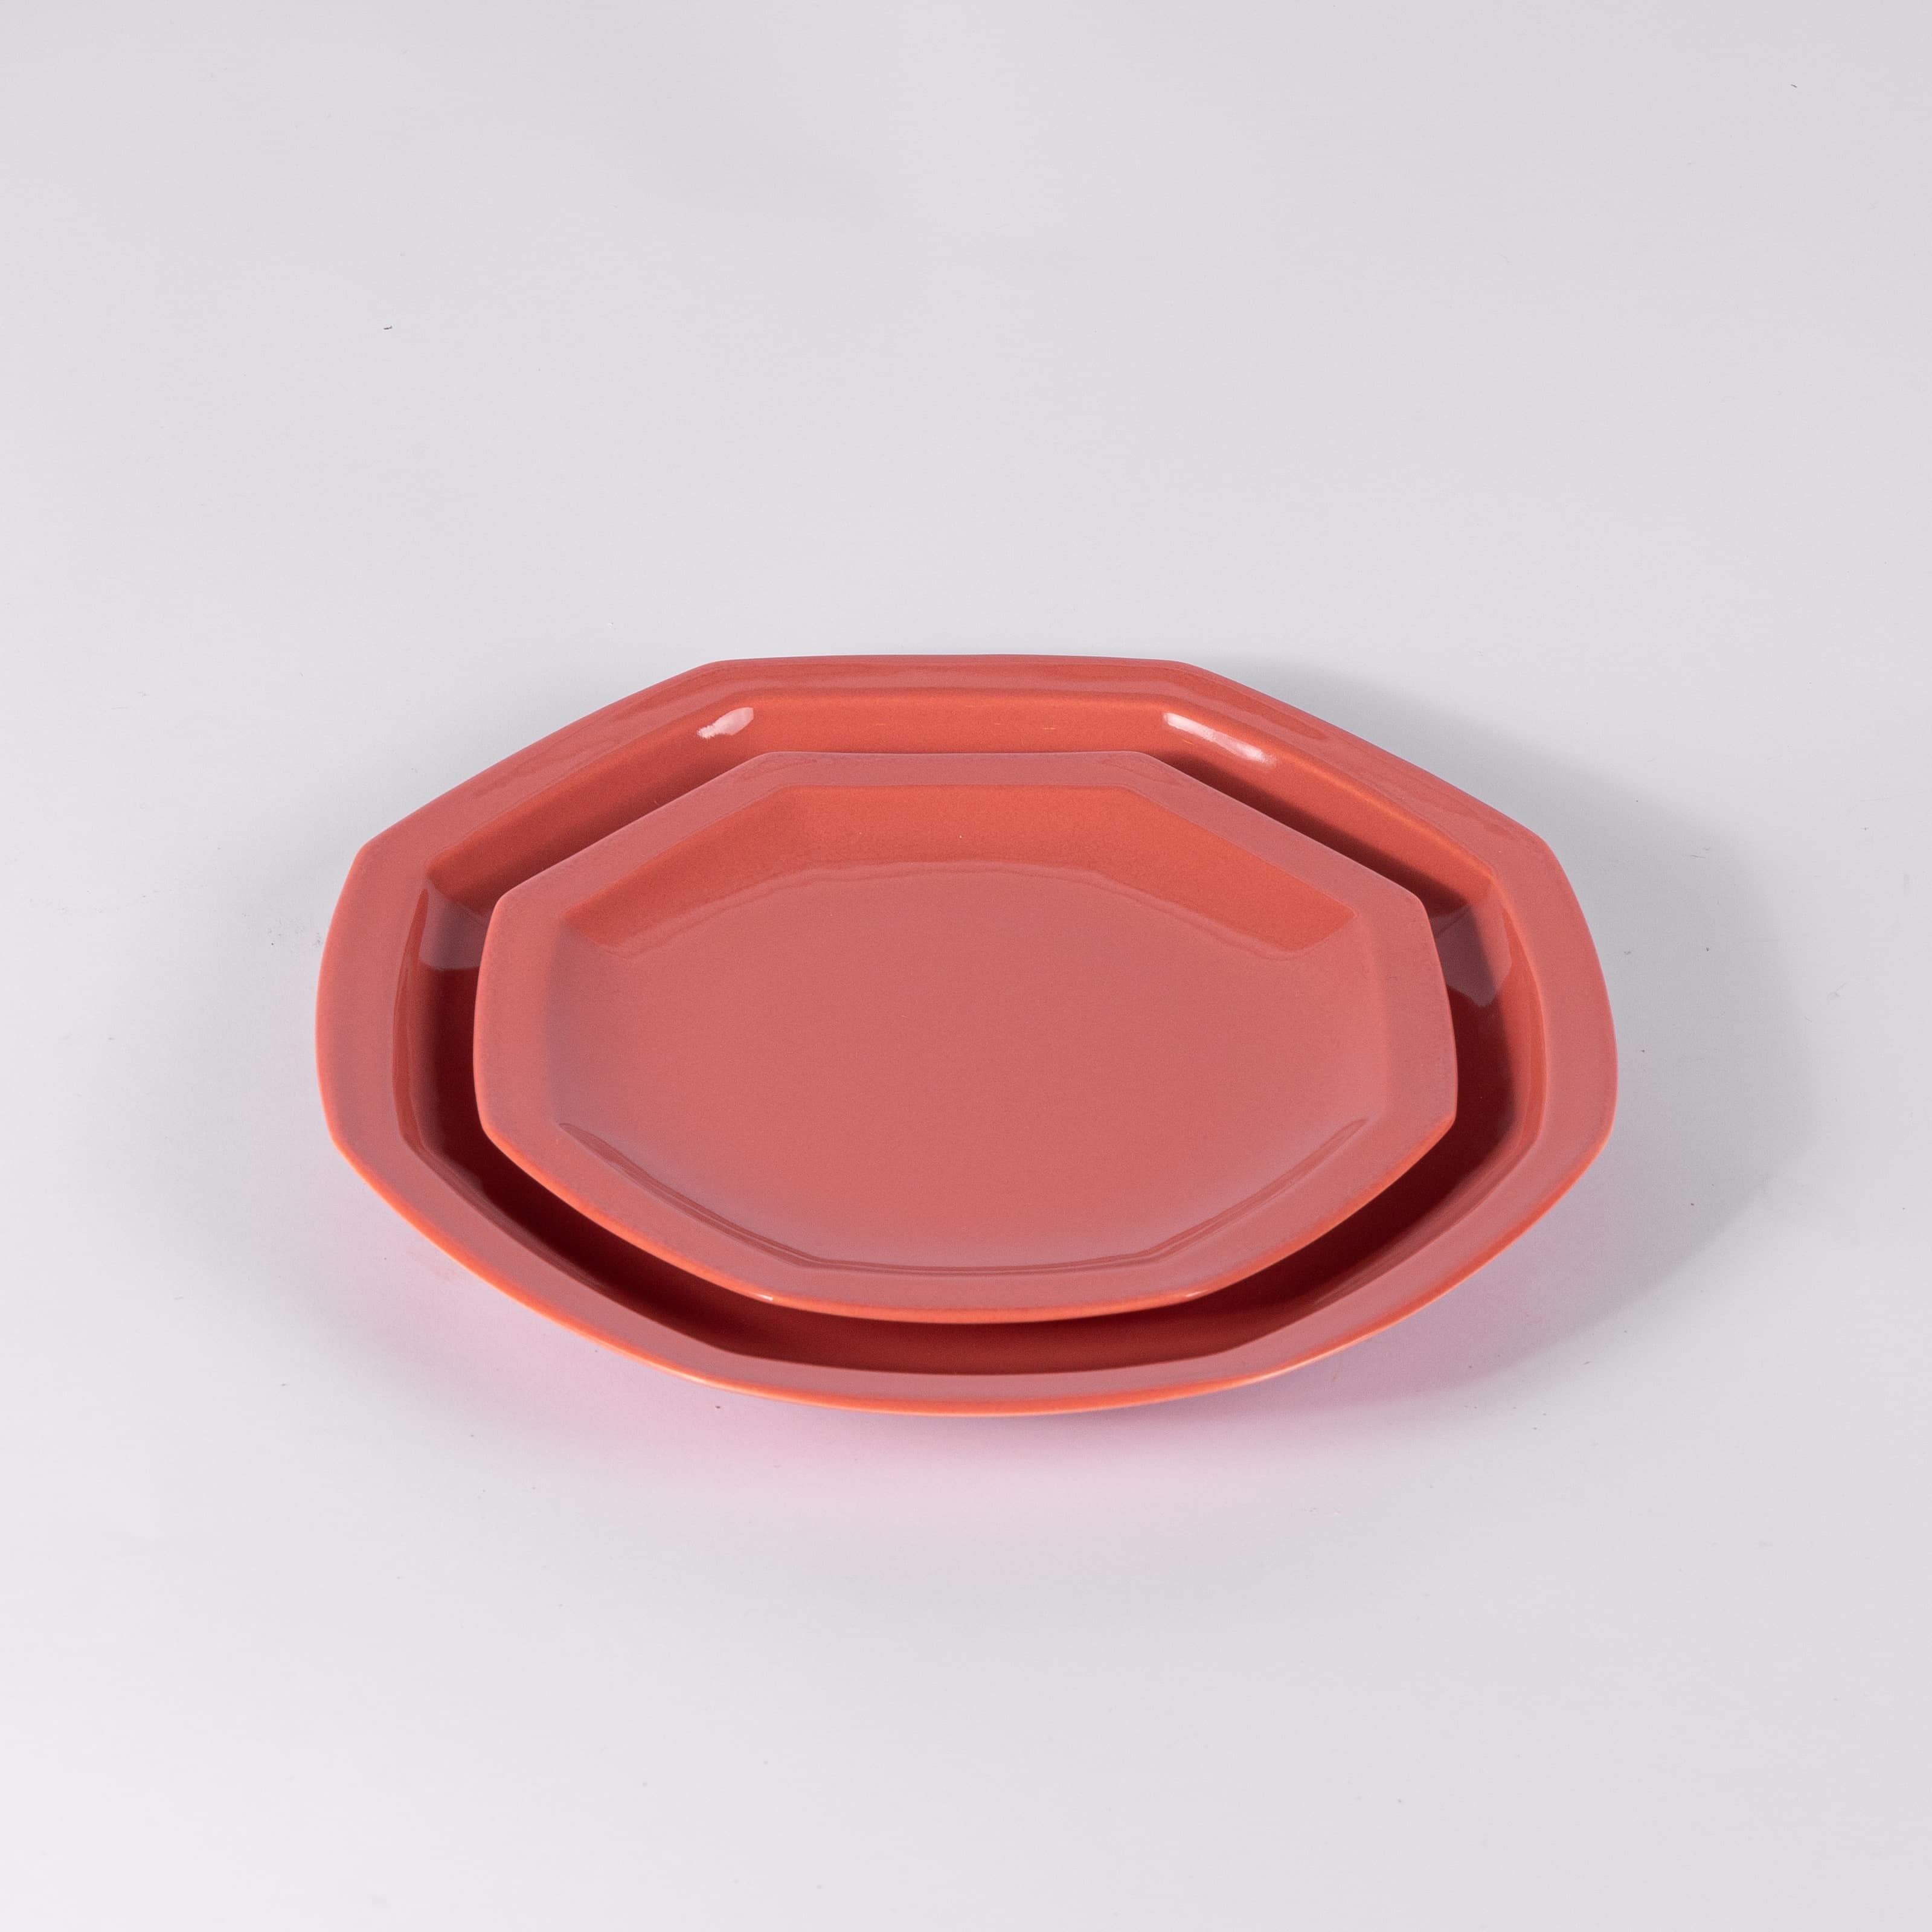 L'assiette octogonale en porcelaine - Terracotta - Intemporelle